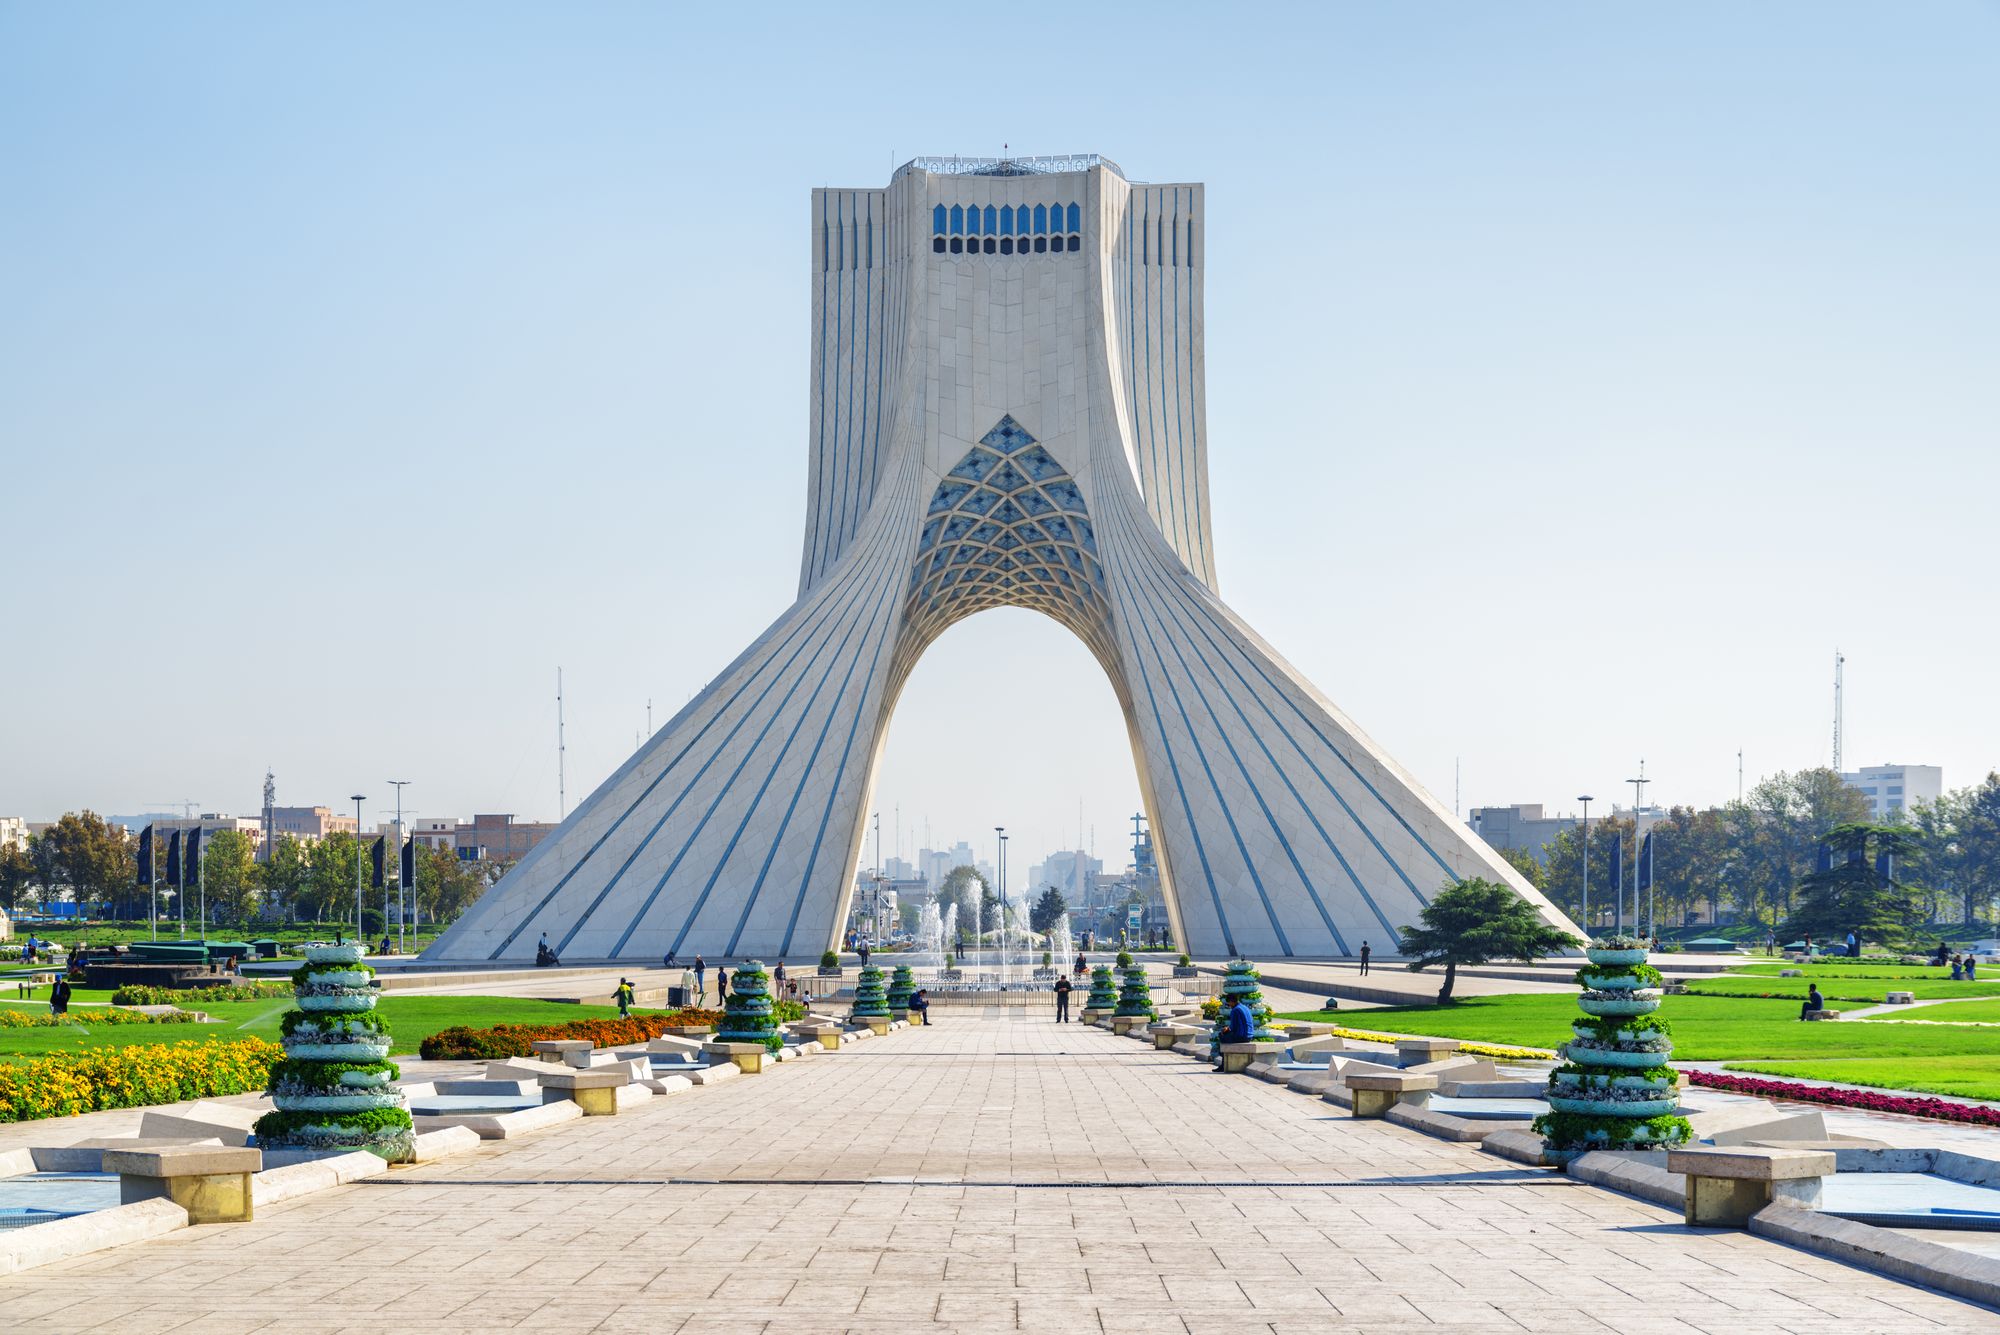 Azadi Square in Tehran